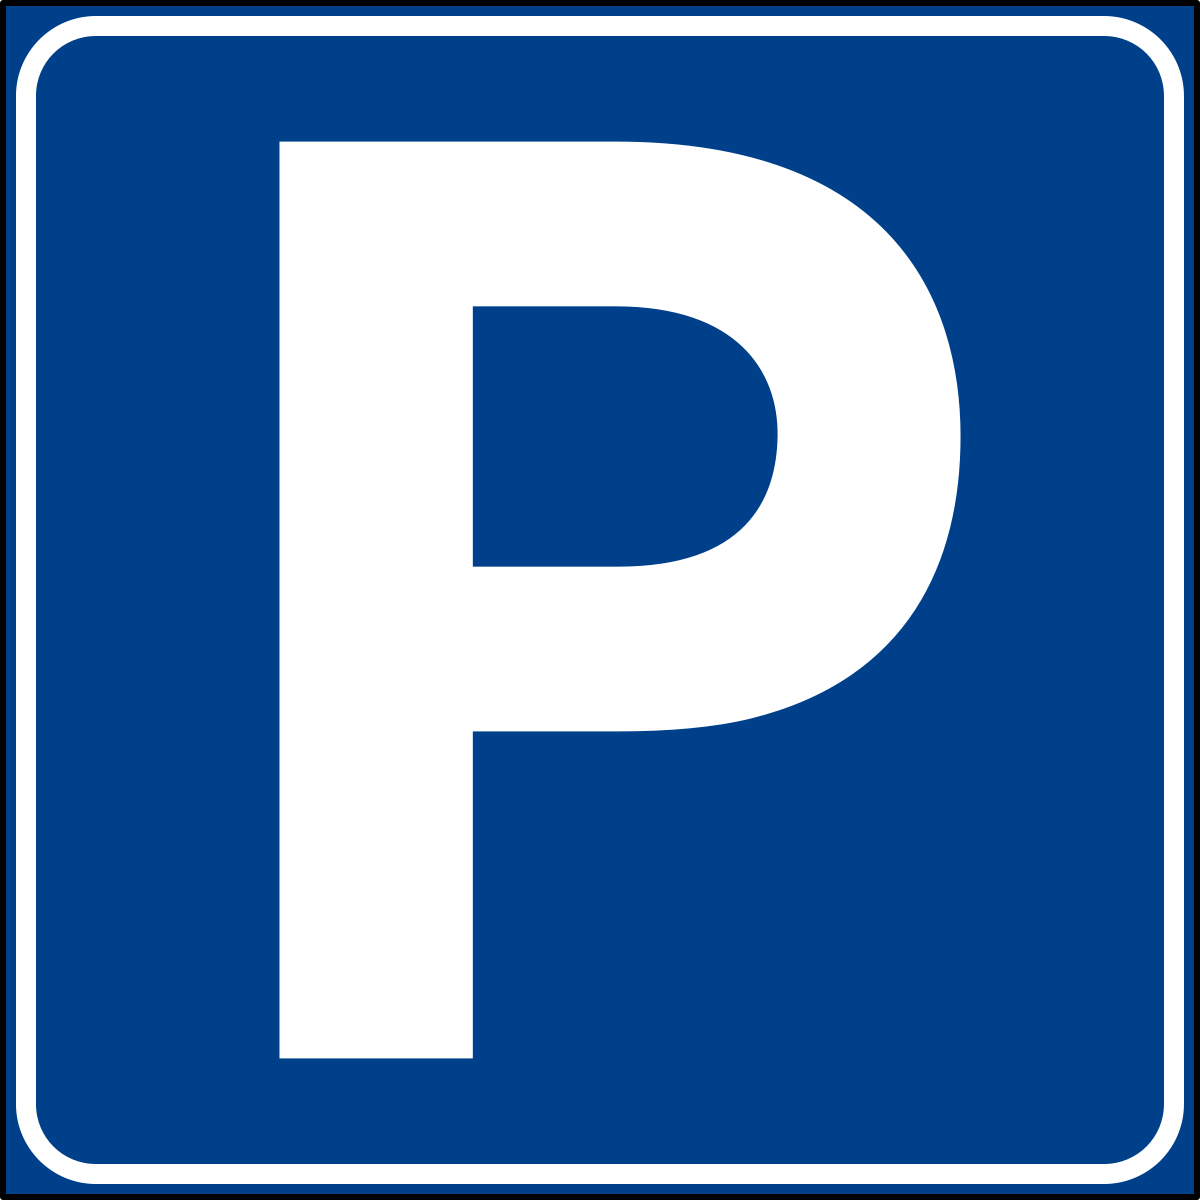 Parcheggio pubblico gratuito